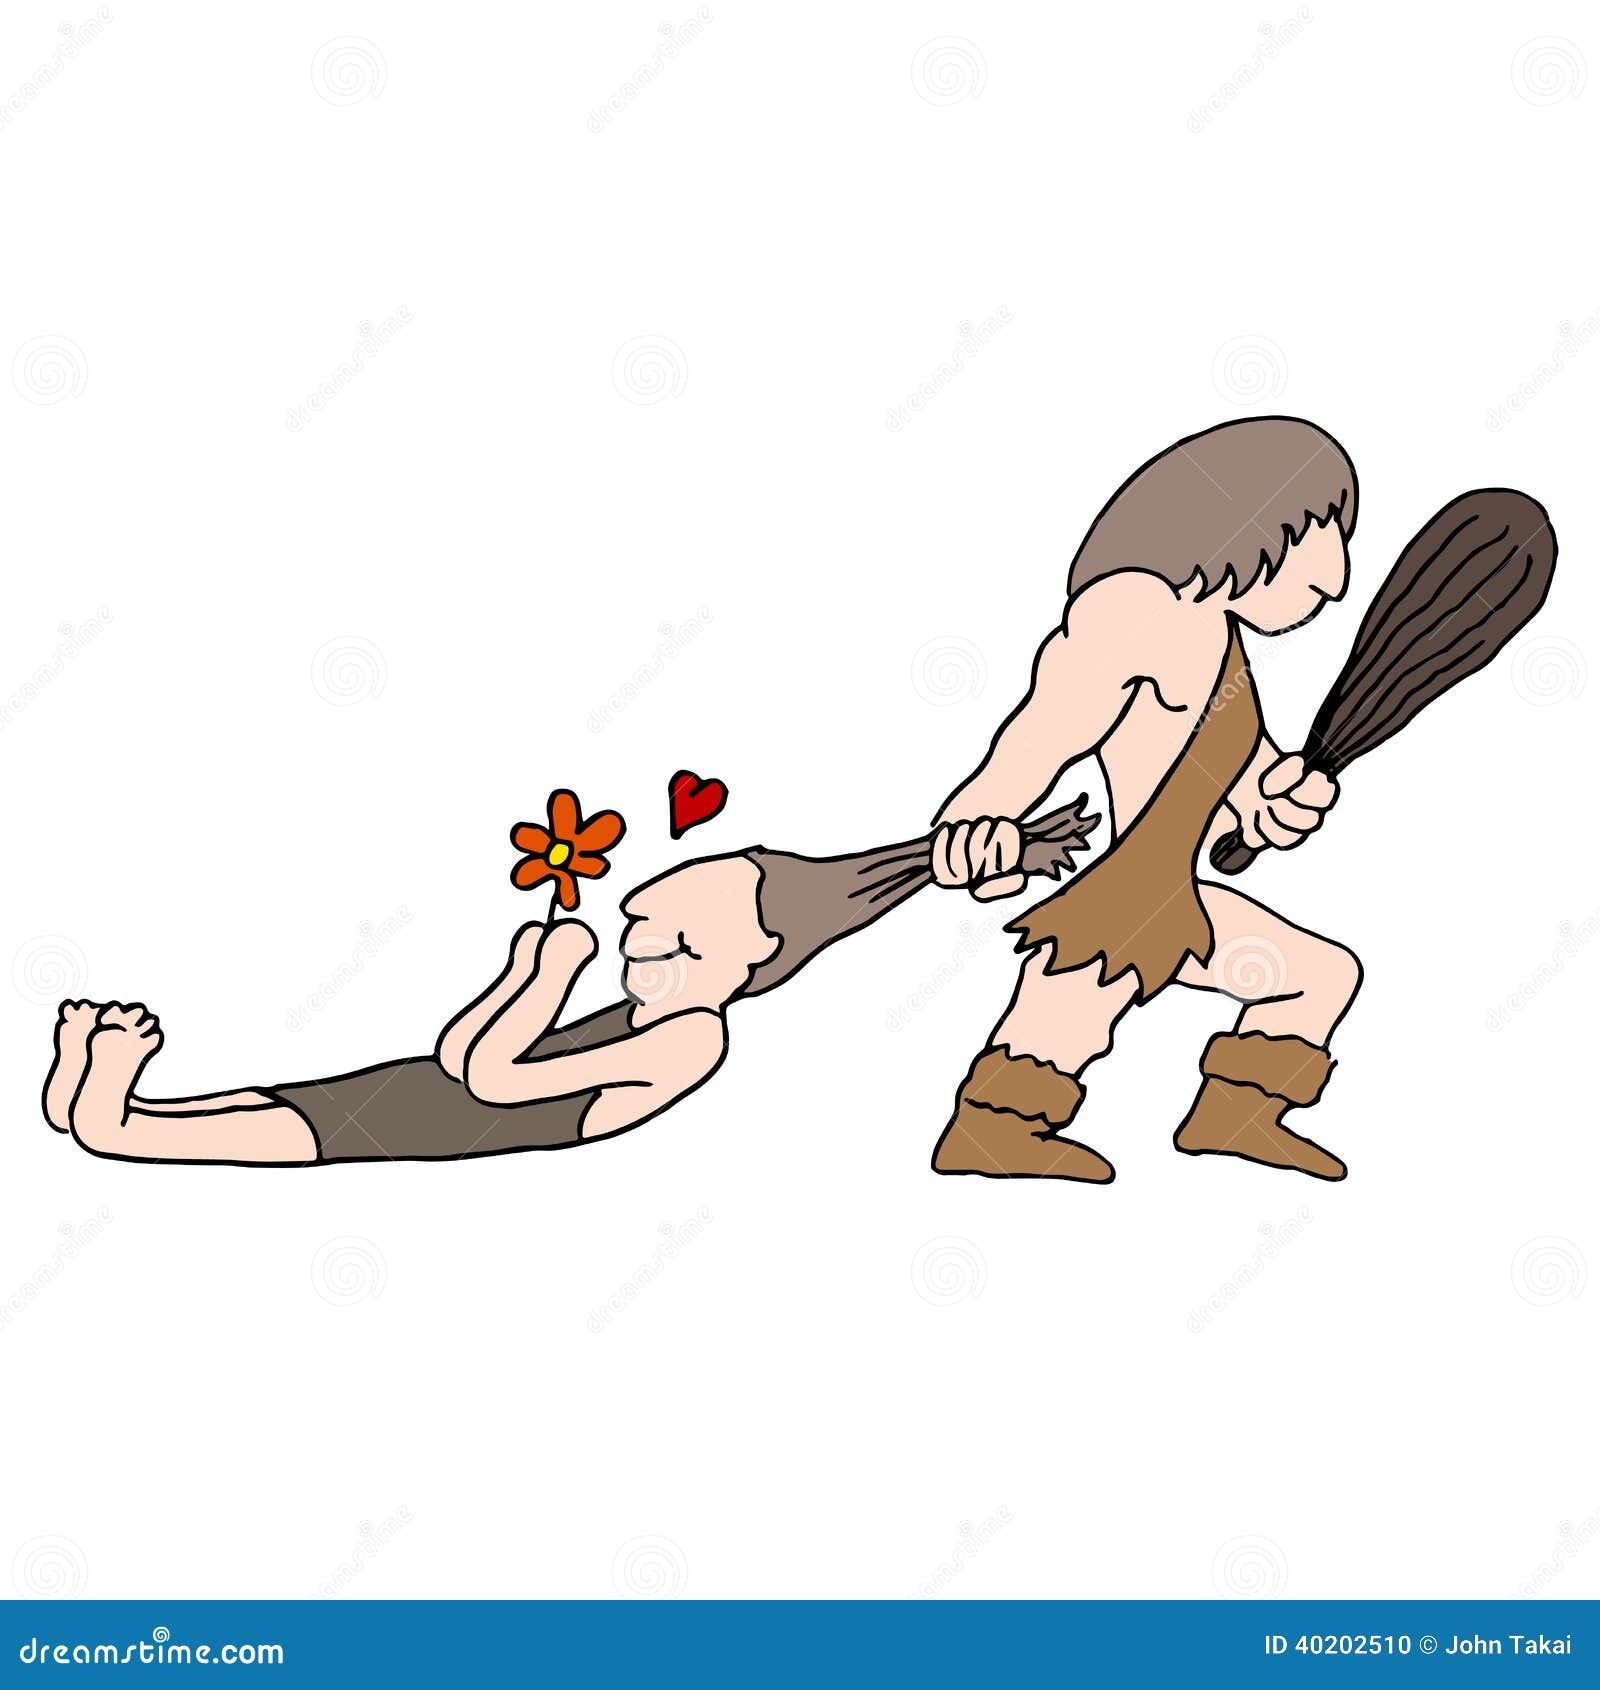 caveman-choosing-mate-image-dragging-his-hair-40202510.jpg